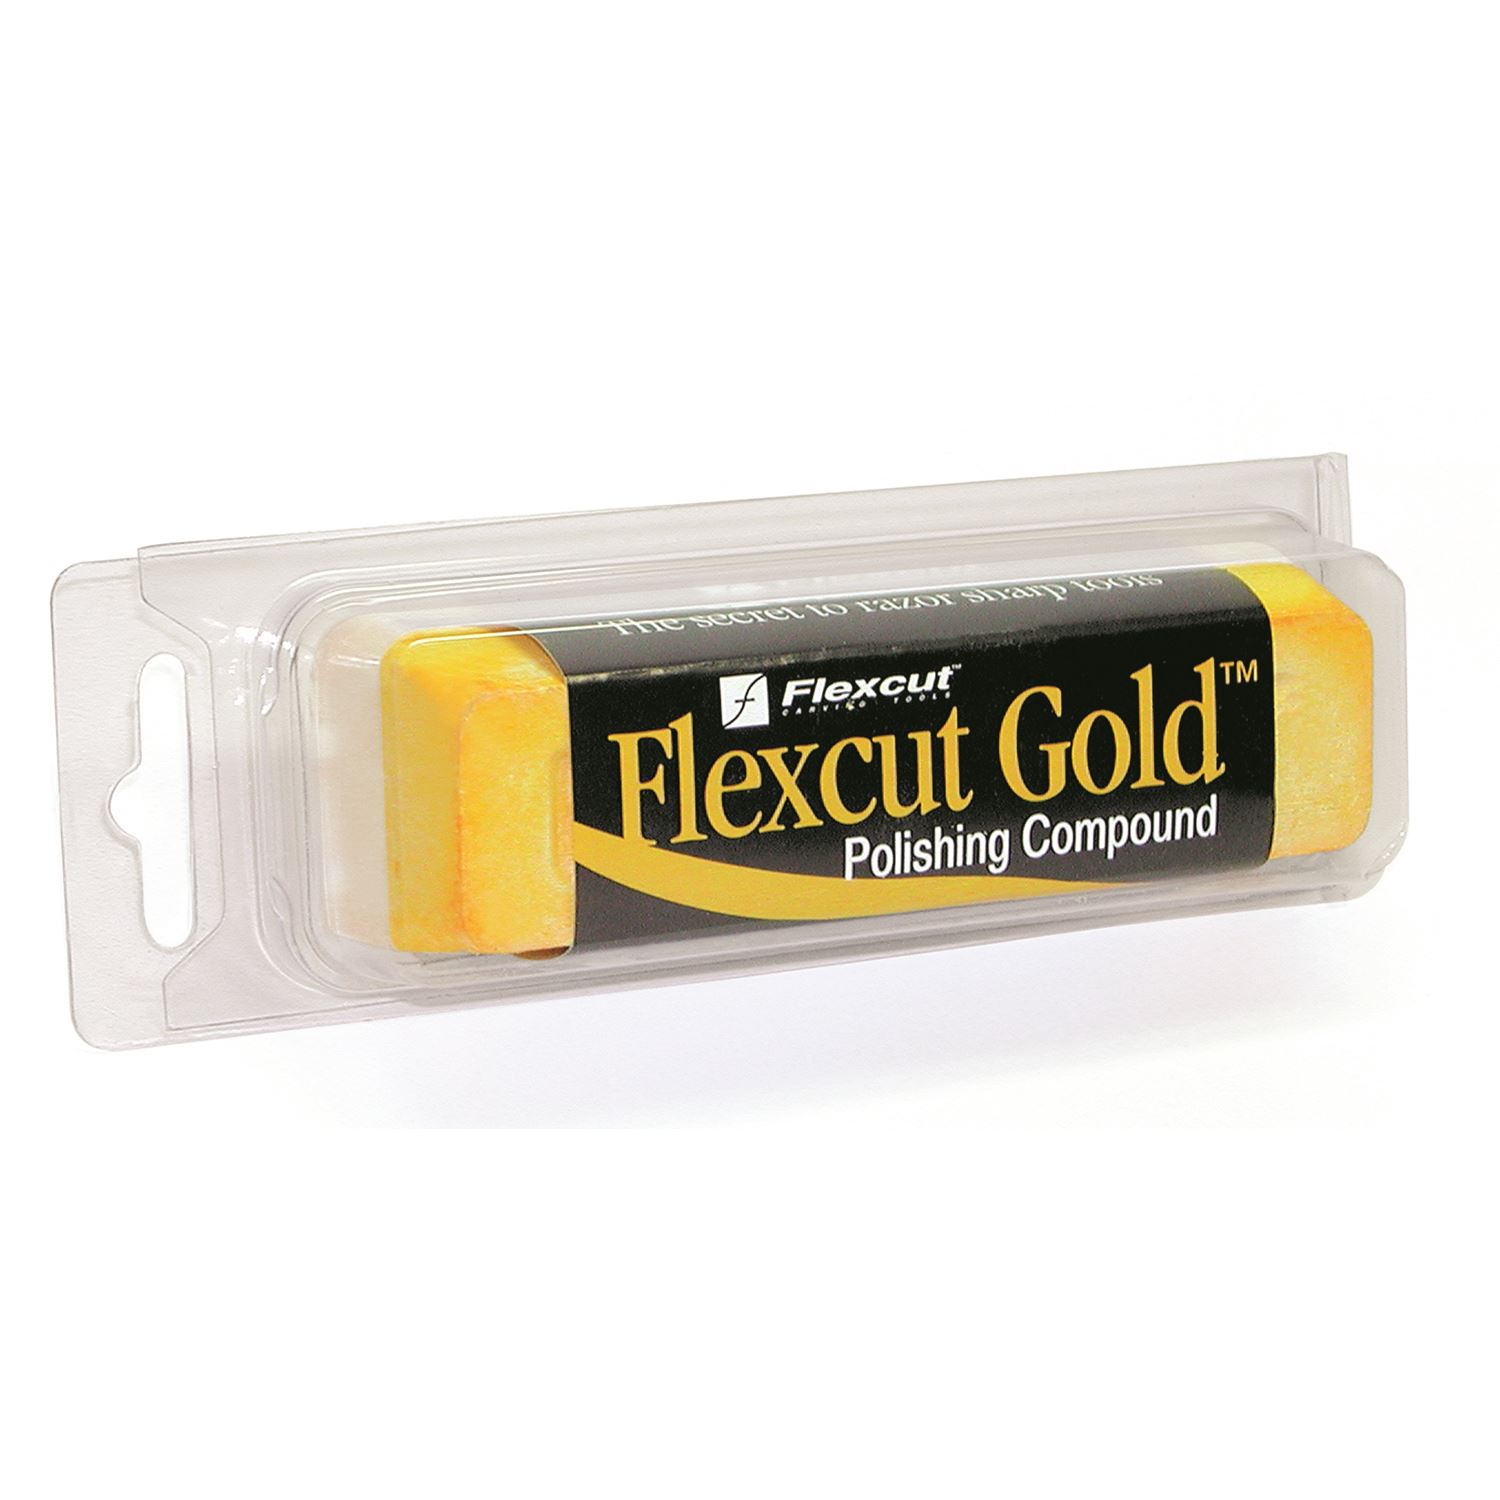 PW11 Flexcut Gold Polishing Compound